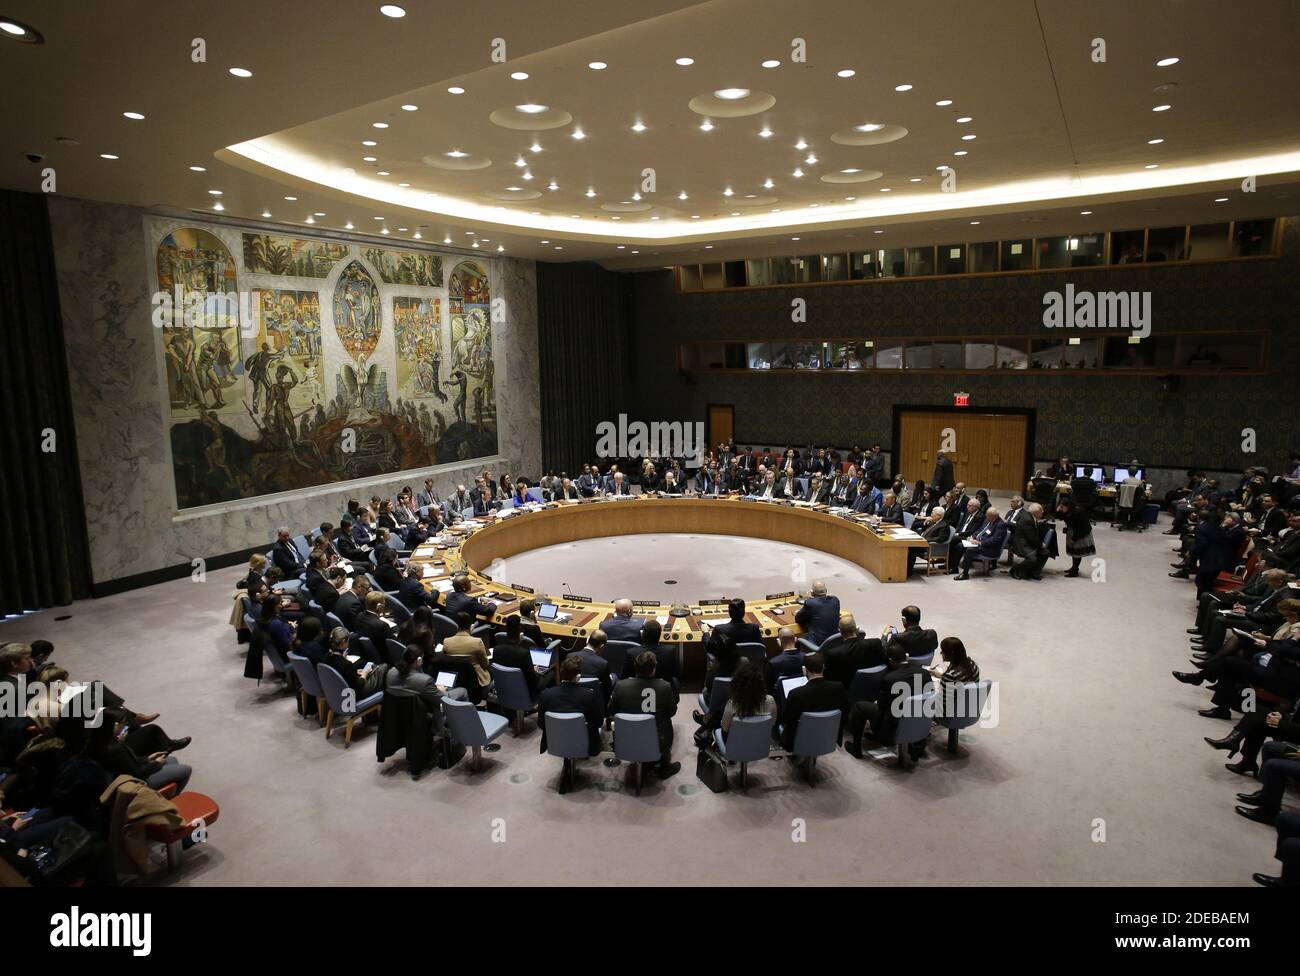 Le président de l'État de Palestine Mahmoud Abbas attend de s'adresser au Conseil de sécurité des Nations Unies au sujet de la situation au Moyen-Orient au siège des Nations Unies, le mardi 11 février 2020, à New York. Photo de John Angelillo/UPI Banque D'Images